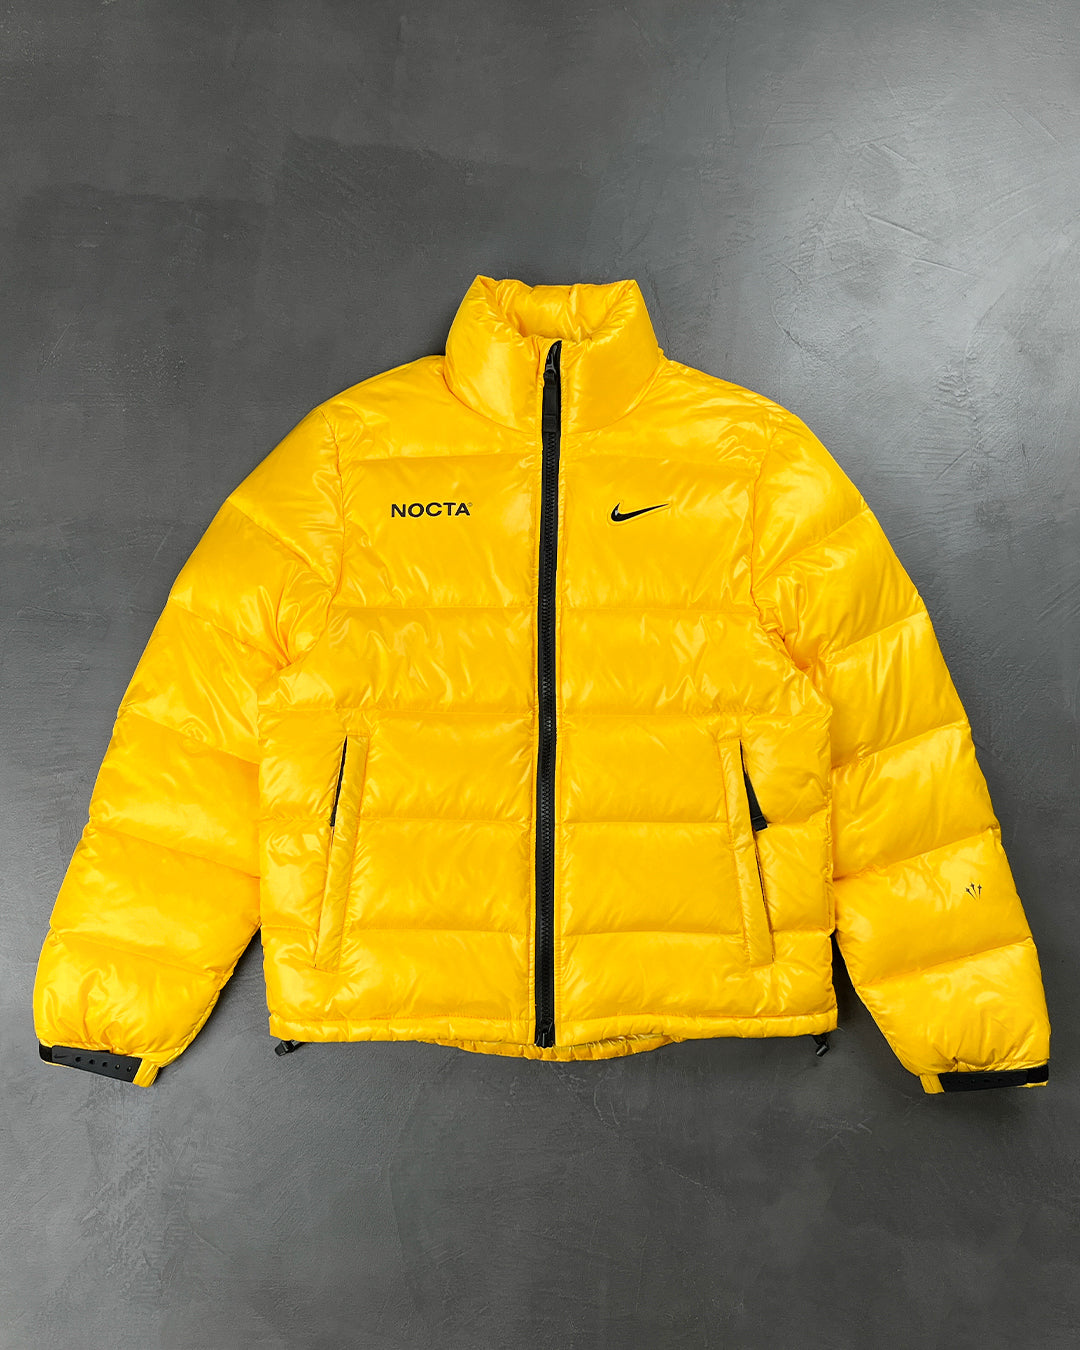 Nike x Drake NOCTA Puffer Jacket Gold